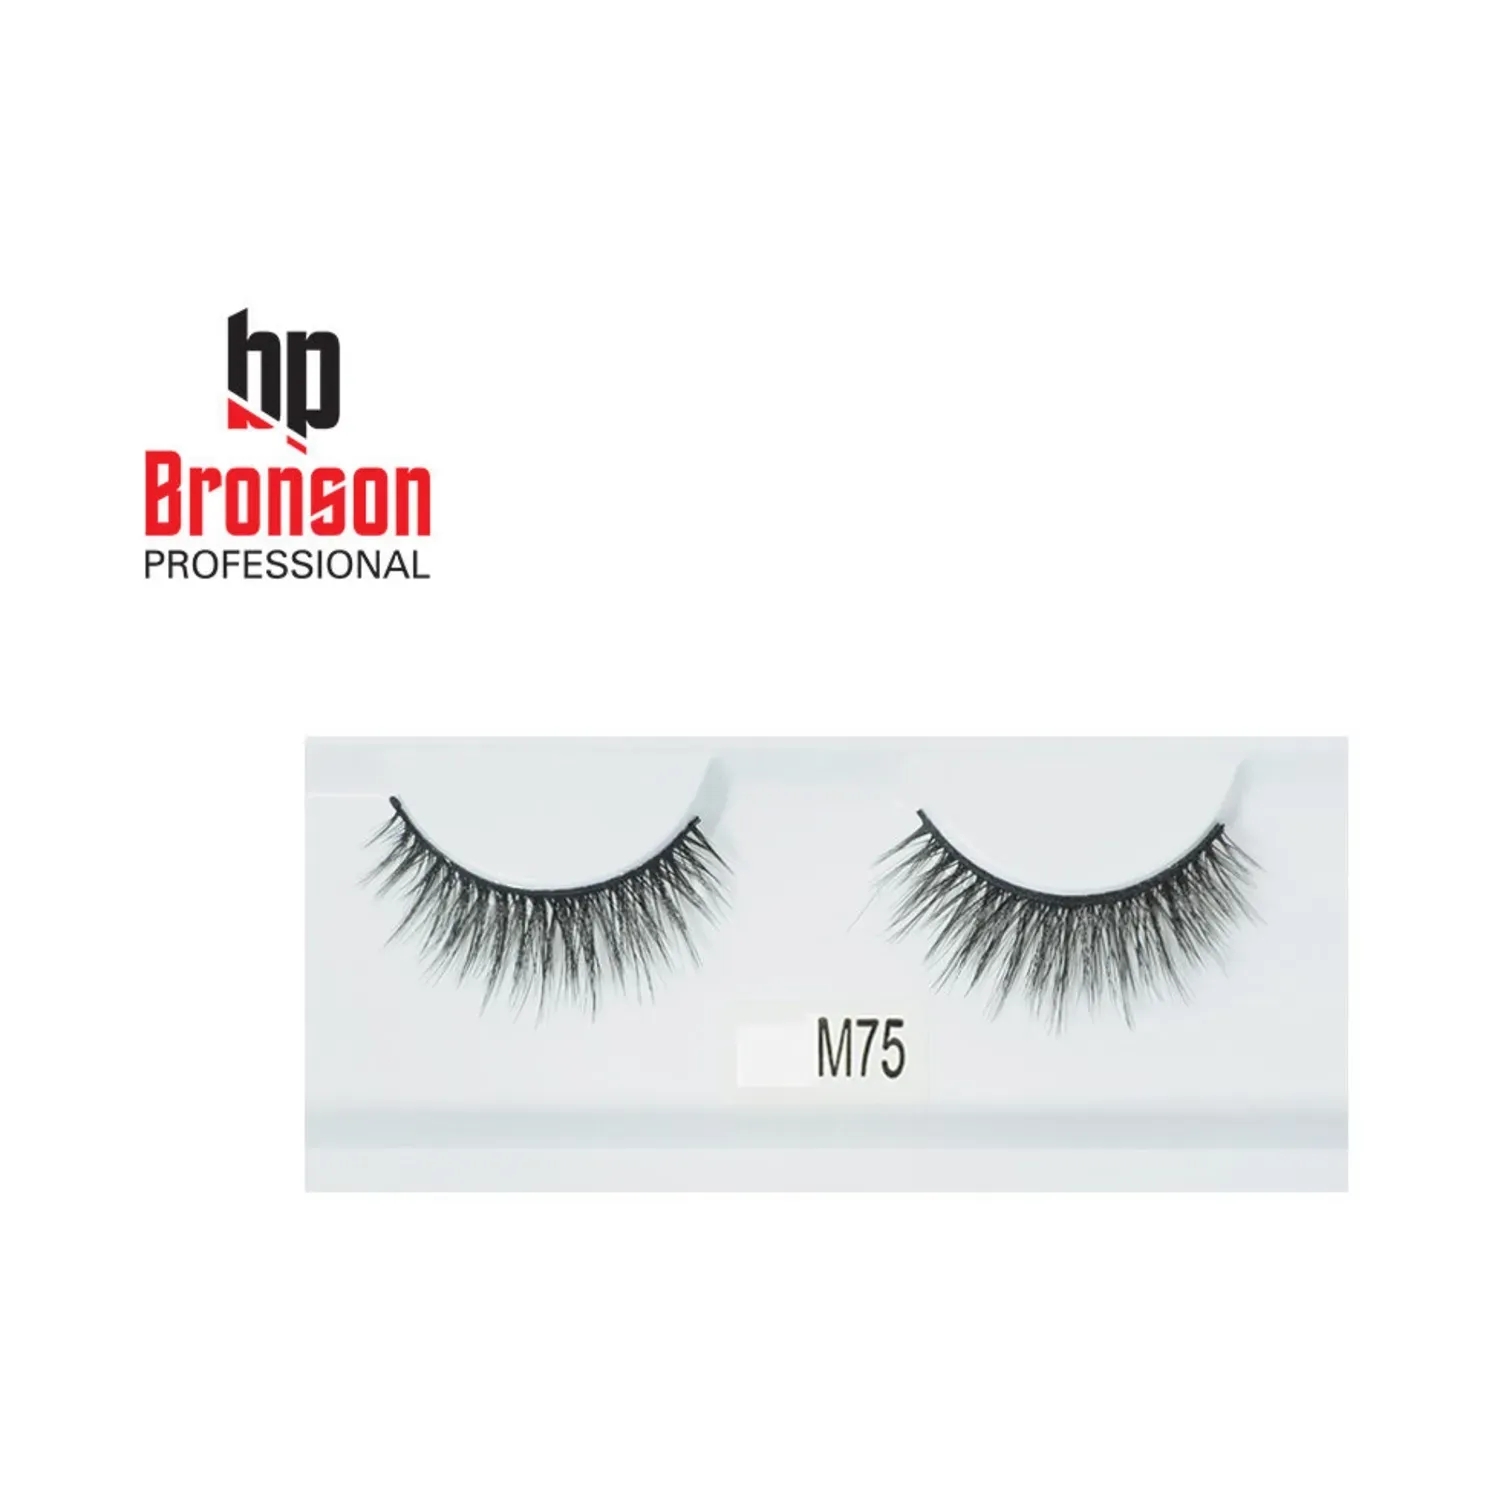 Bronson Professional | Bronson Professional 3D Eyelashes - M75 Black (1 Pair)